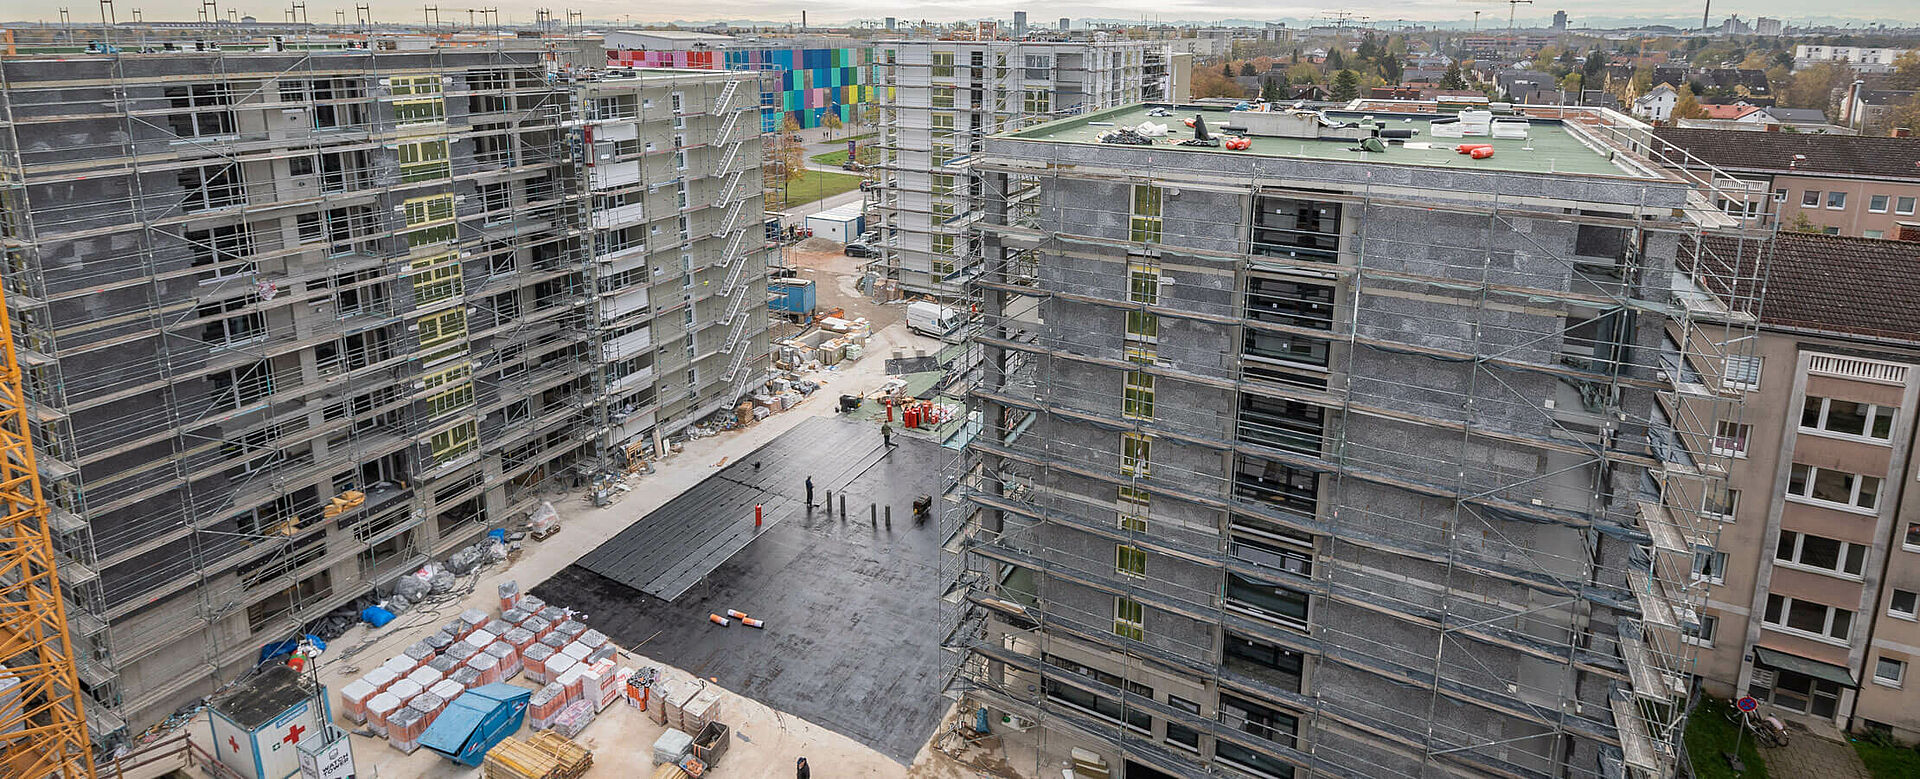 Bauelemente & Wohnungsbau in München